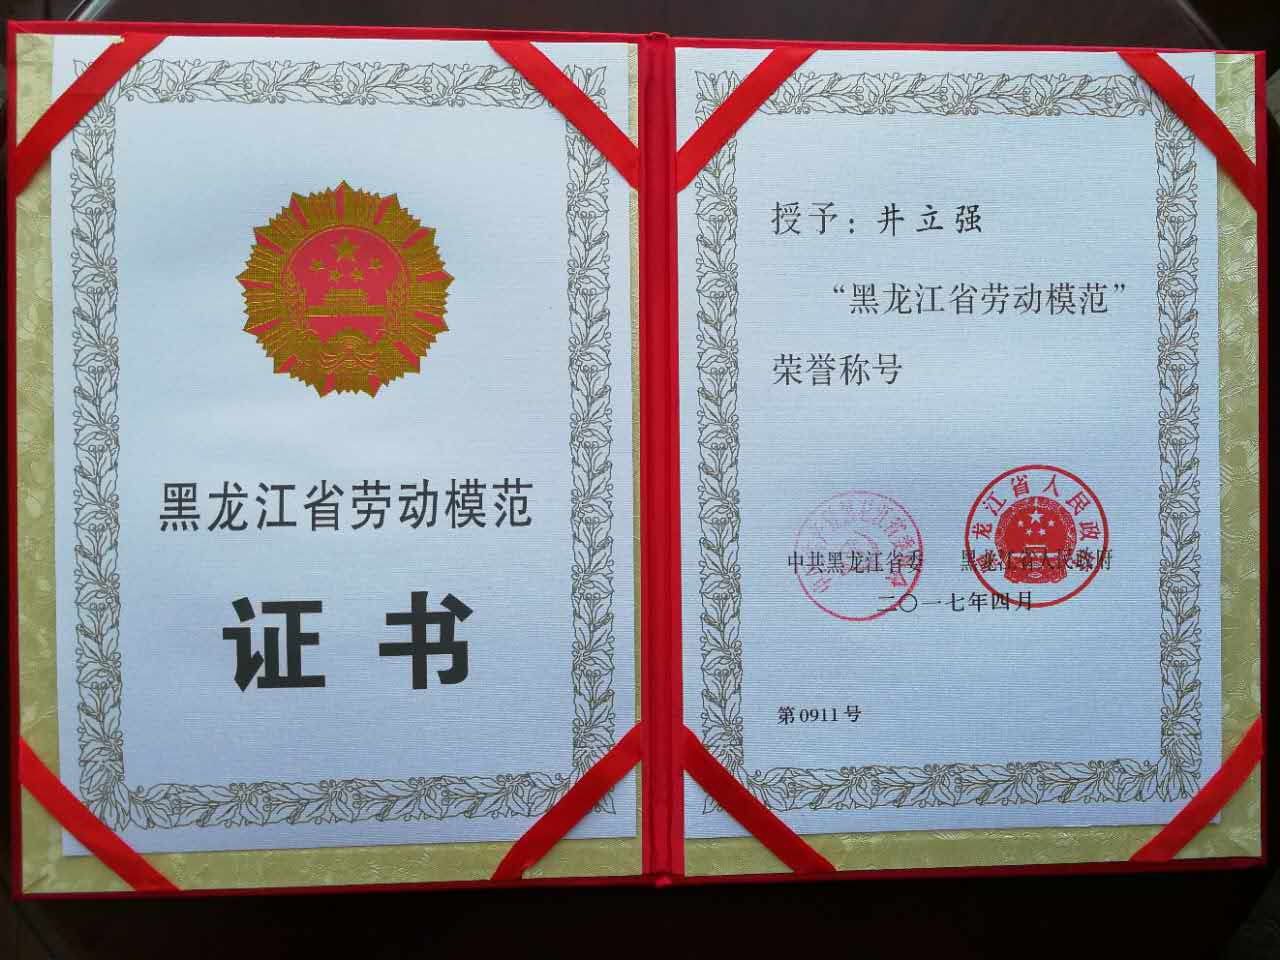 我校井立强教授荣获黑龙江省第十二届劳动模范荣誉称号